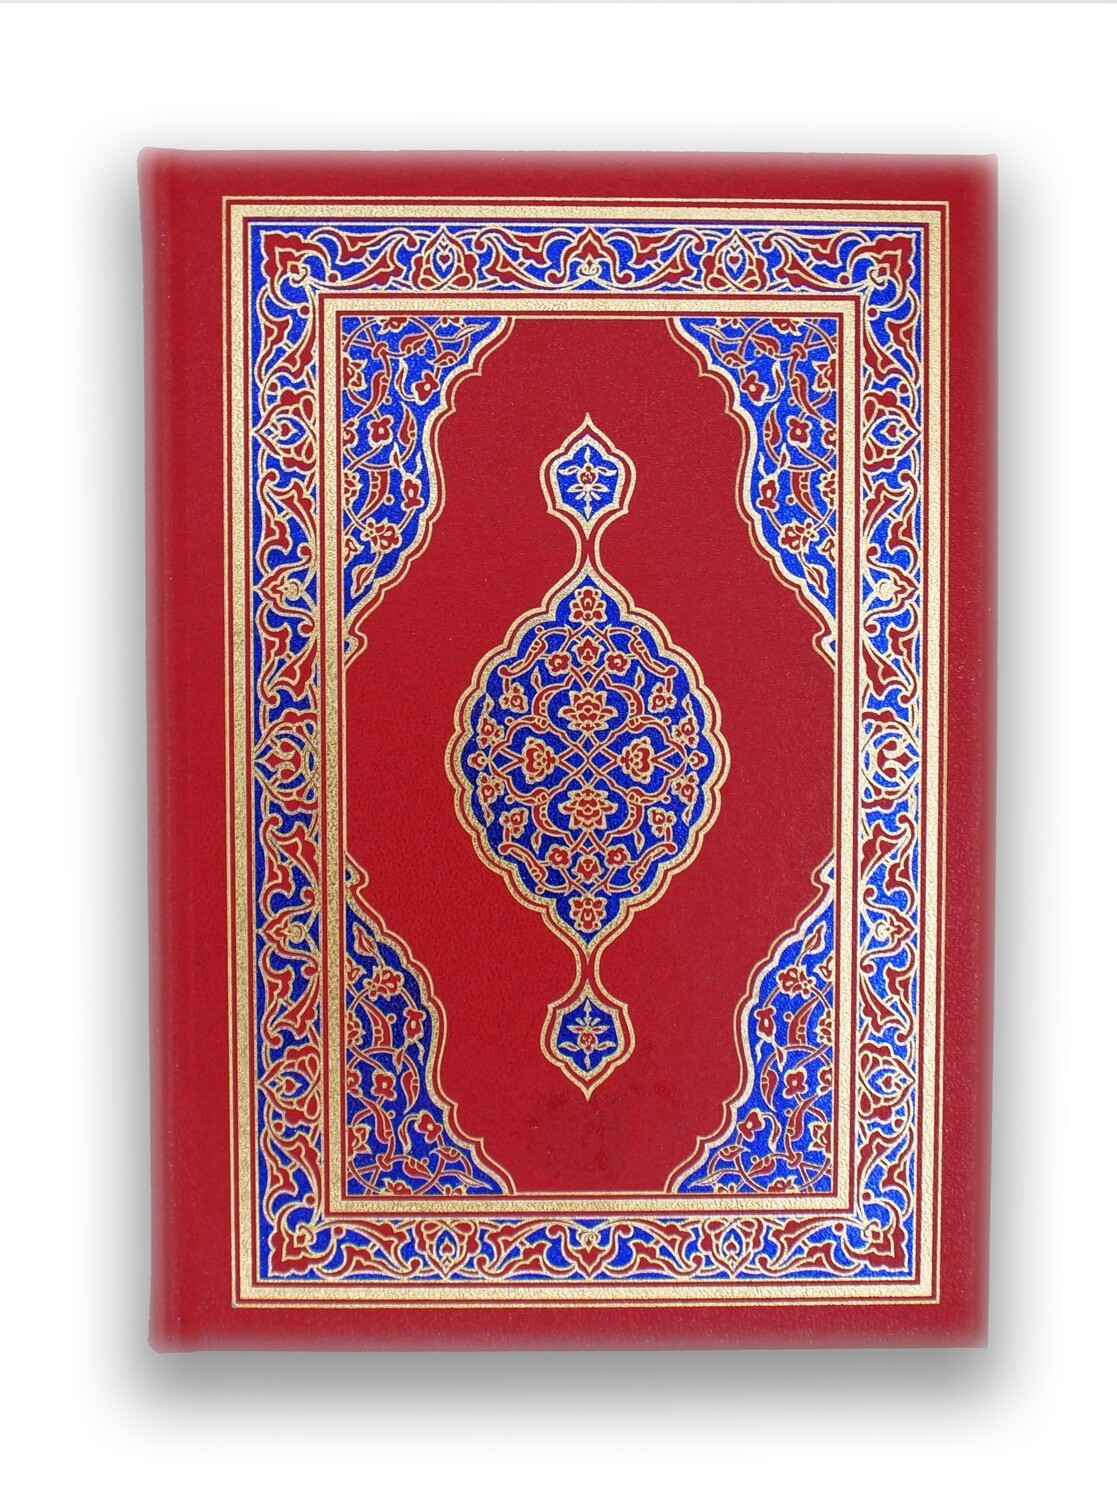 The Miraculous Qur'an in Arabic